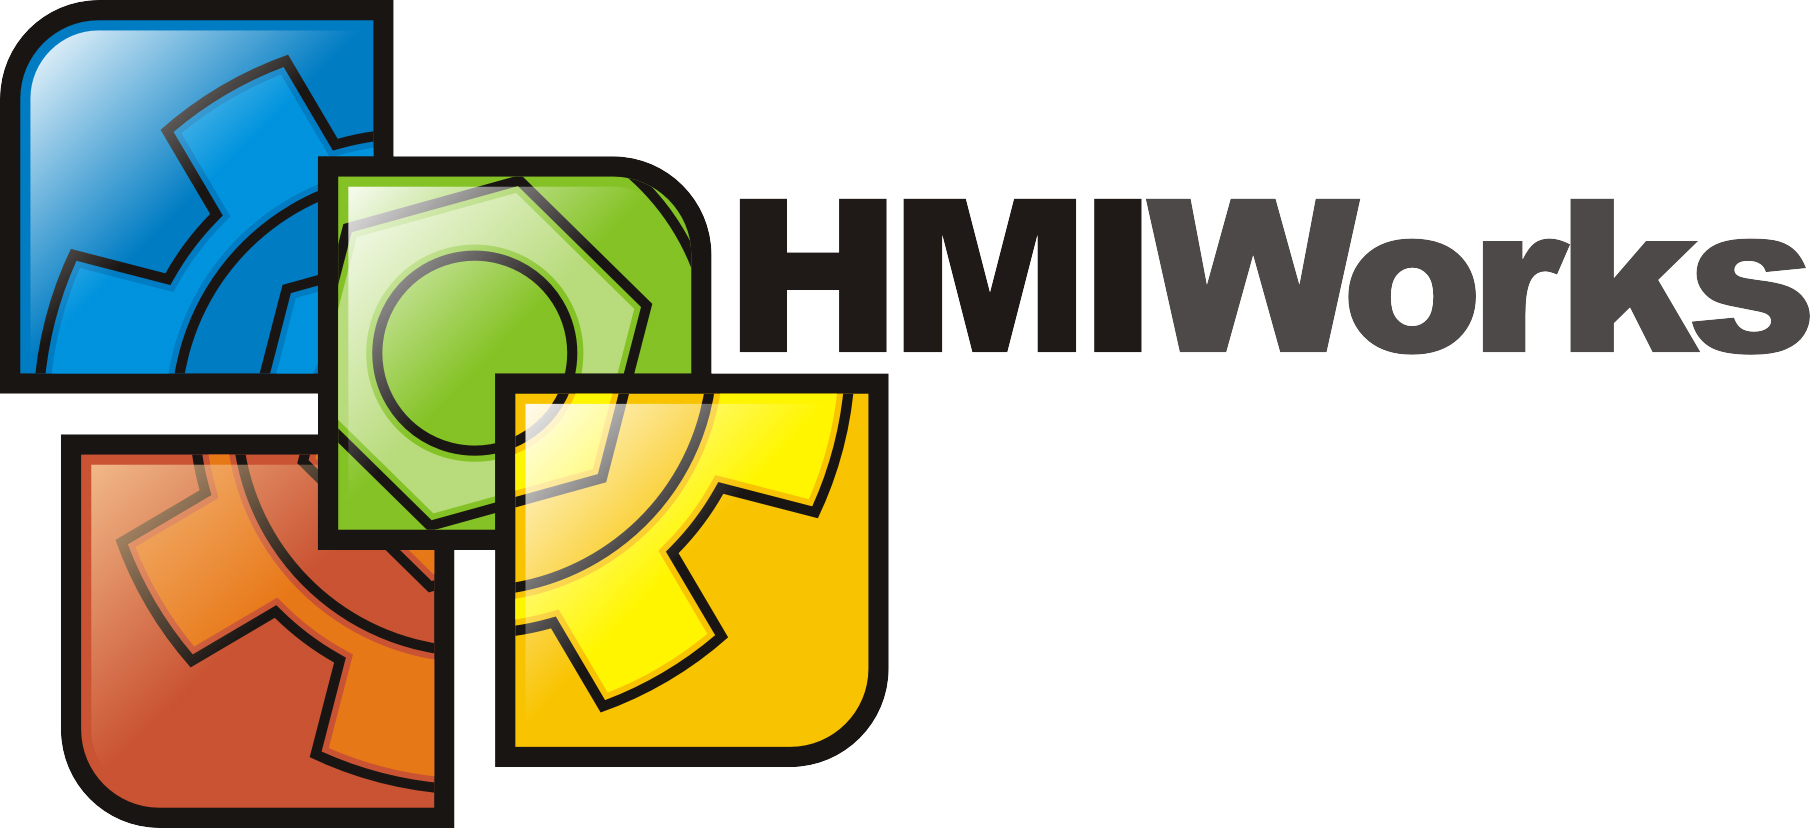 HMIWorks-Software buy online at ICPDAS-EUROPE